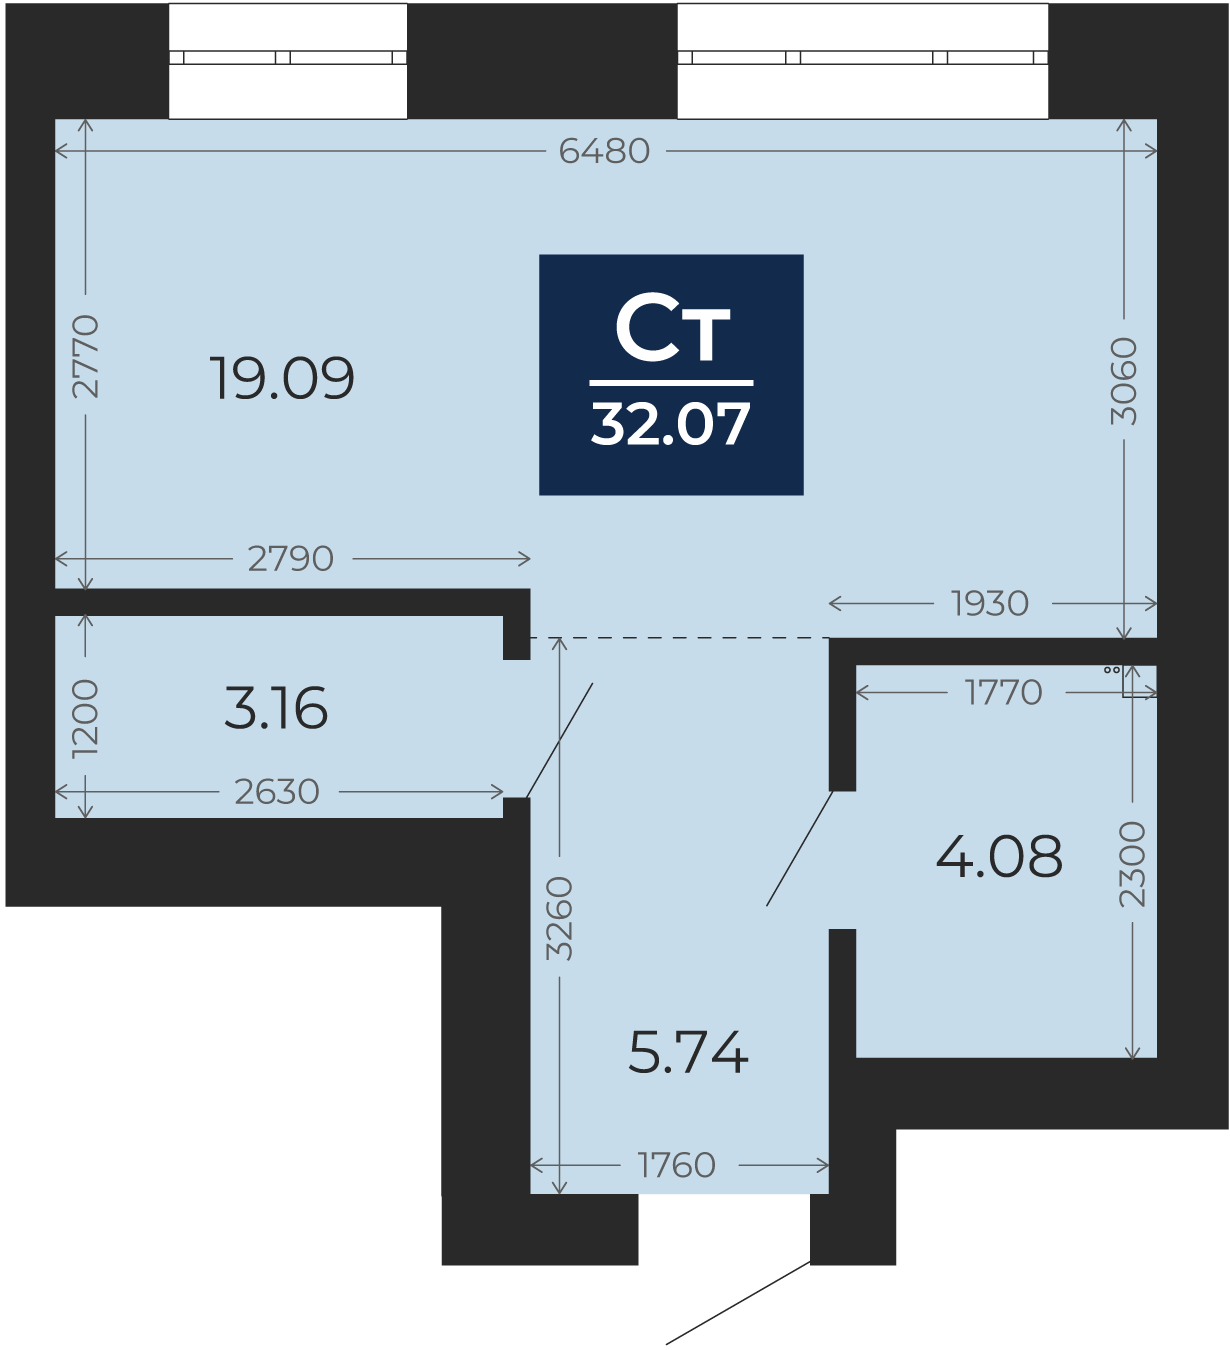 Квартира № 253, Студия, 32.07 кв. м, 10 этаж